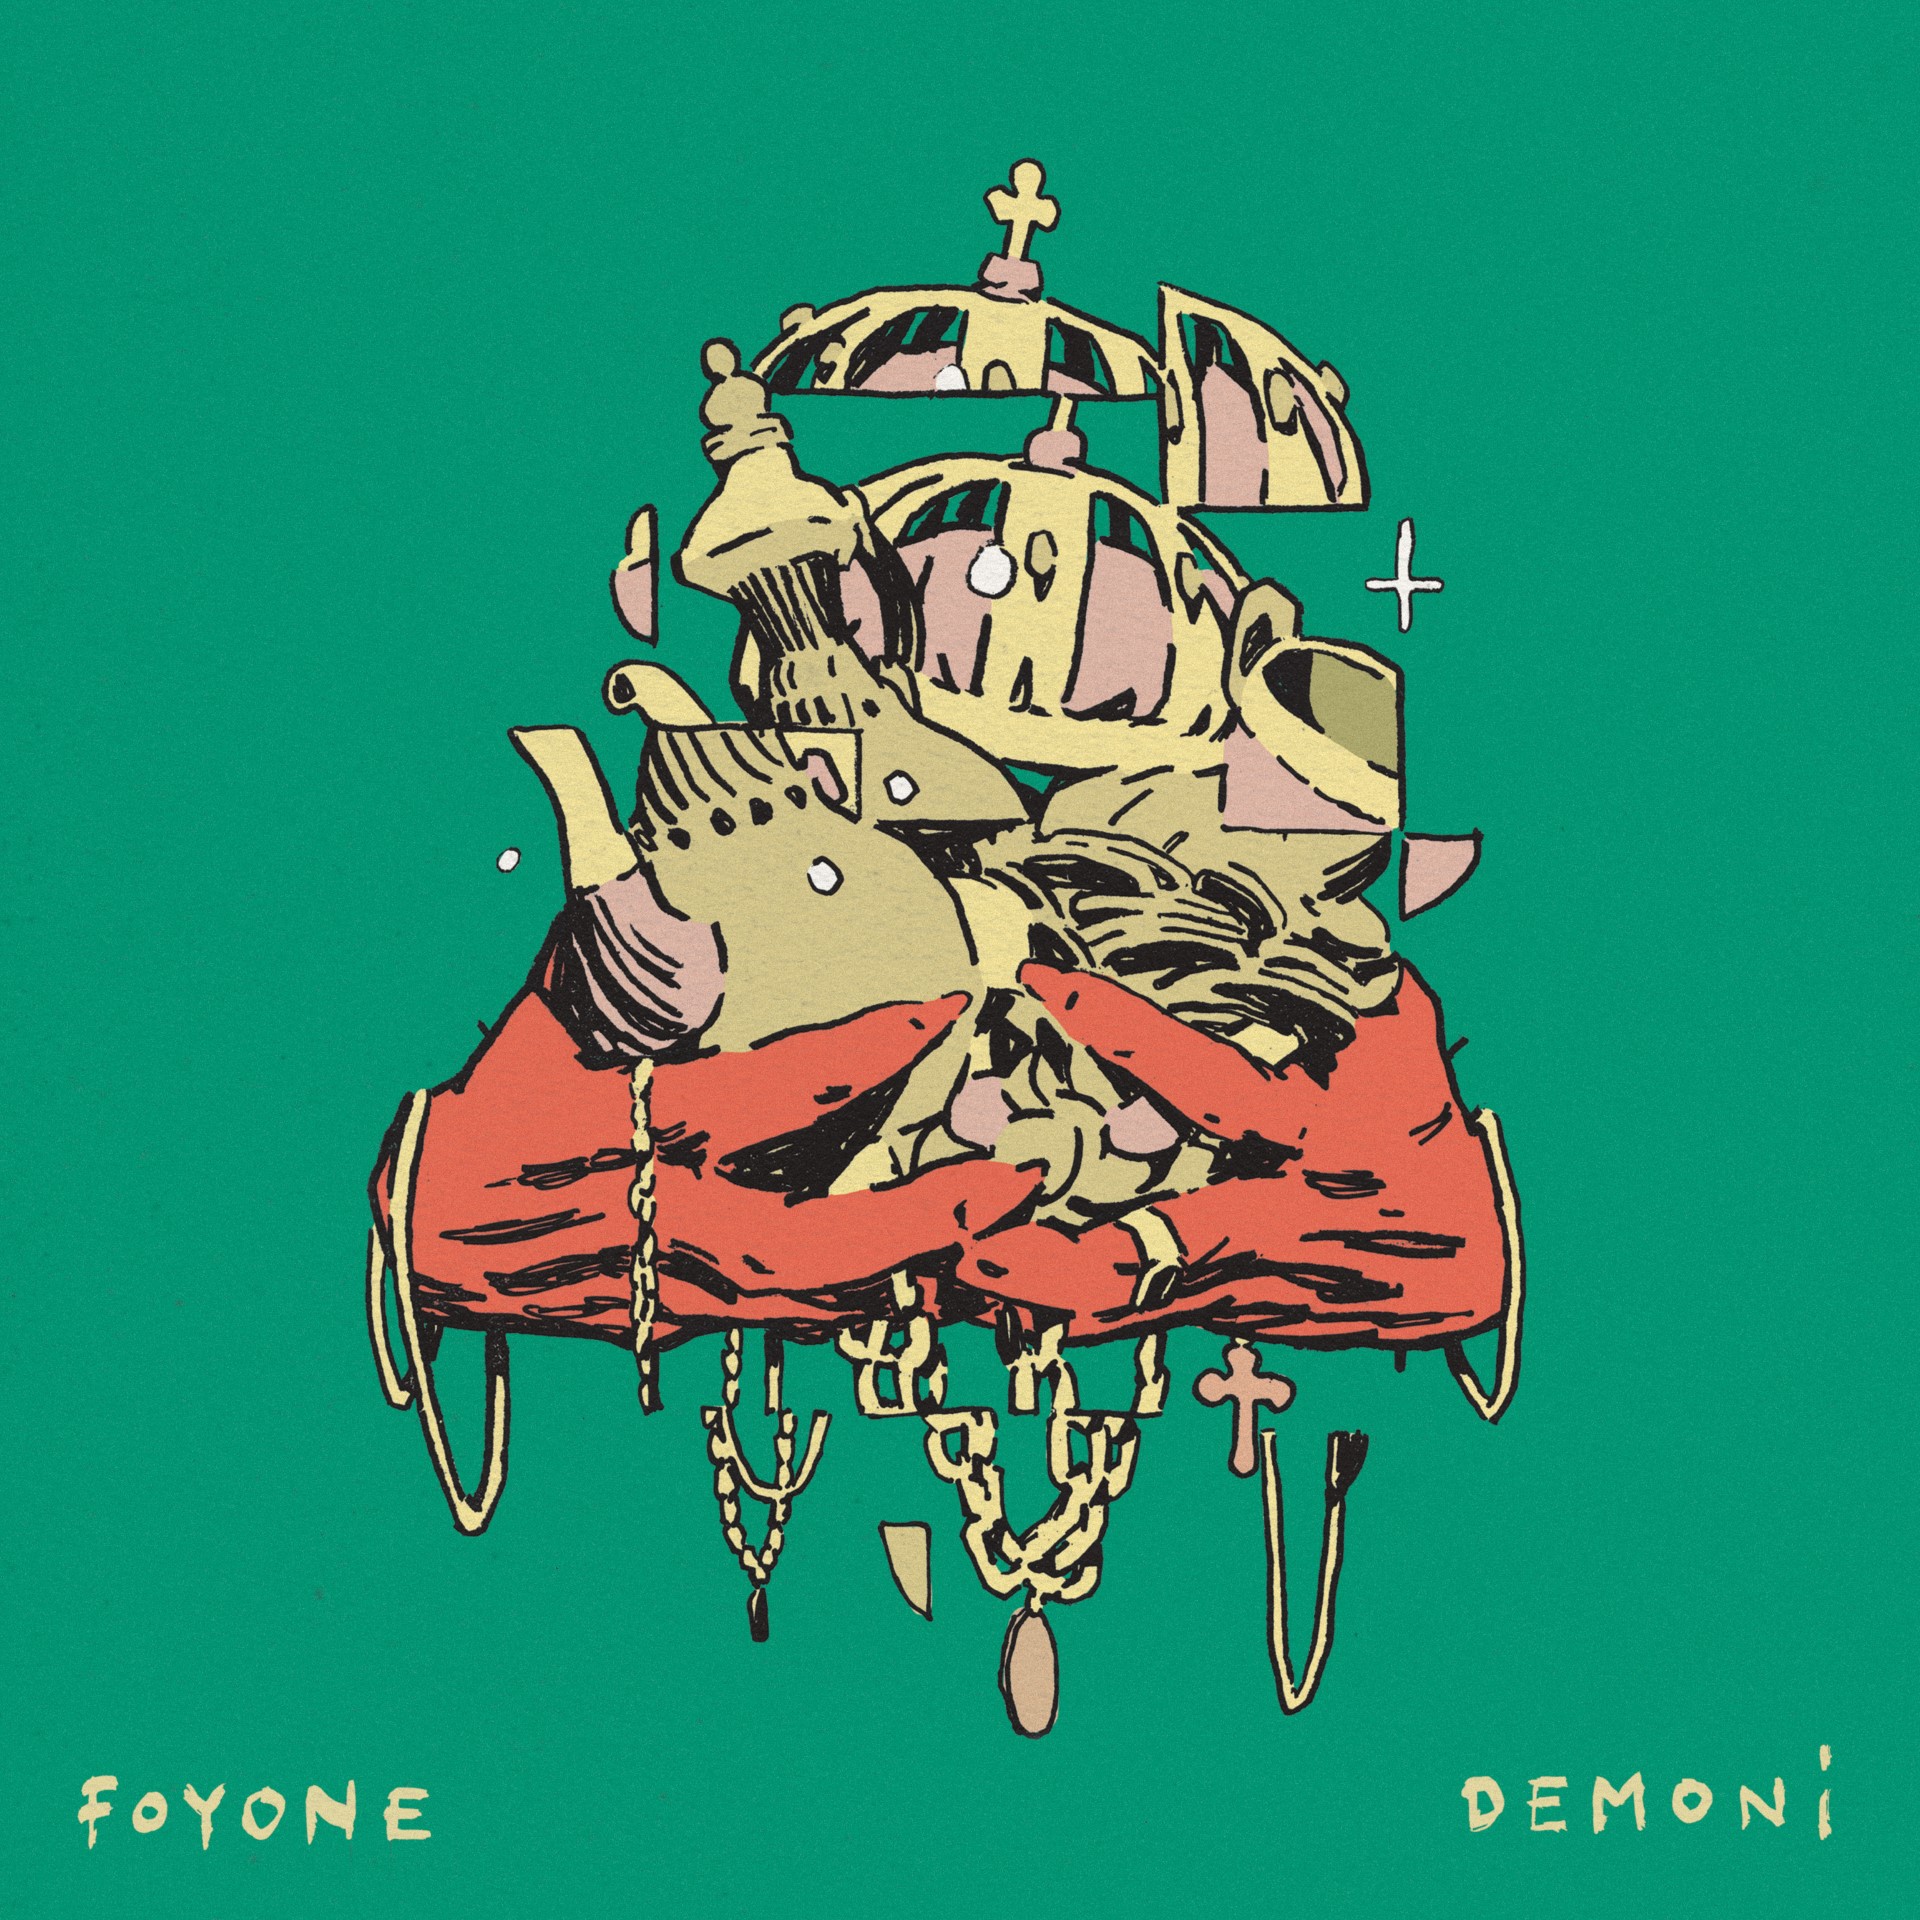 Foyone Demoni musica urbana nuevo disco demonio